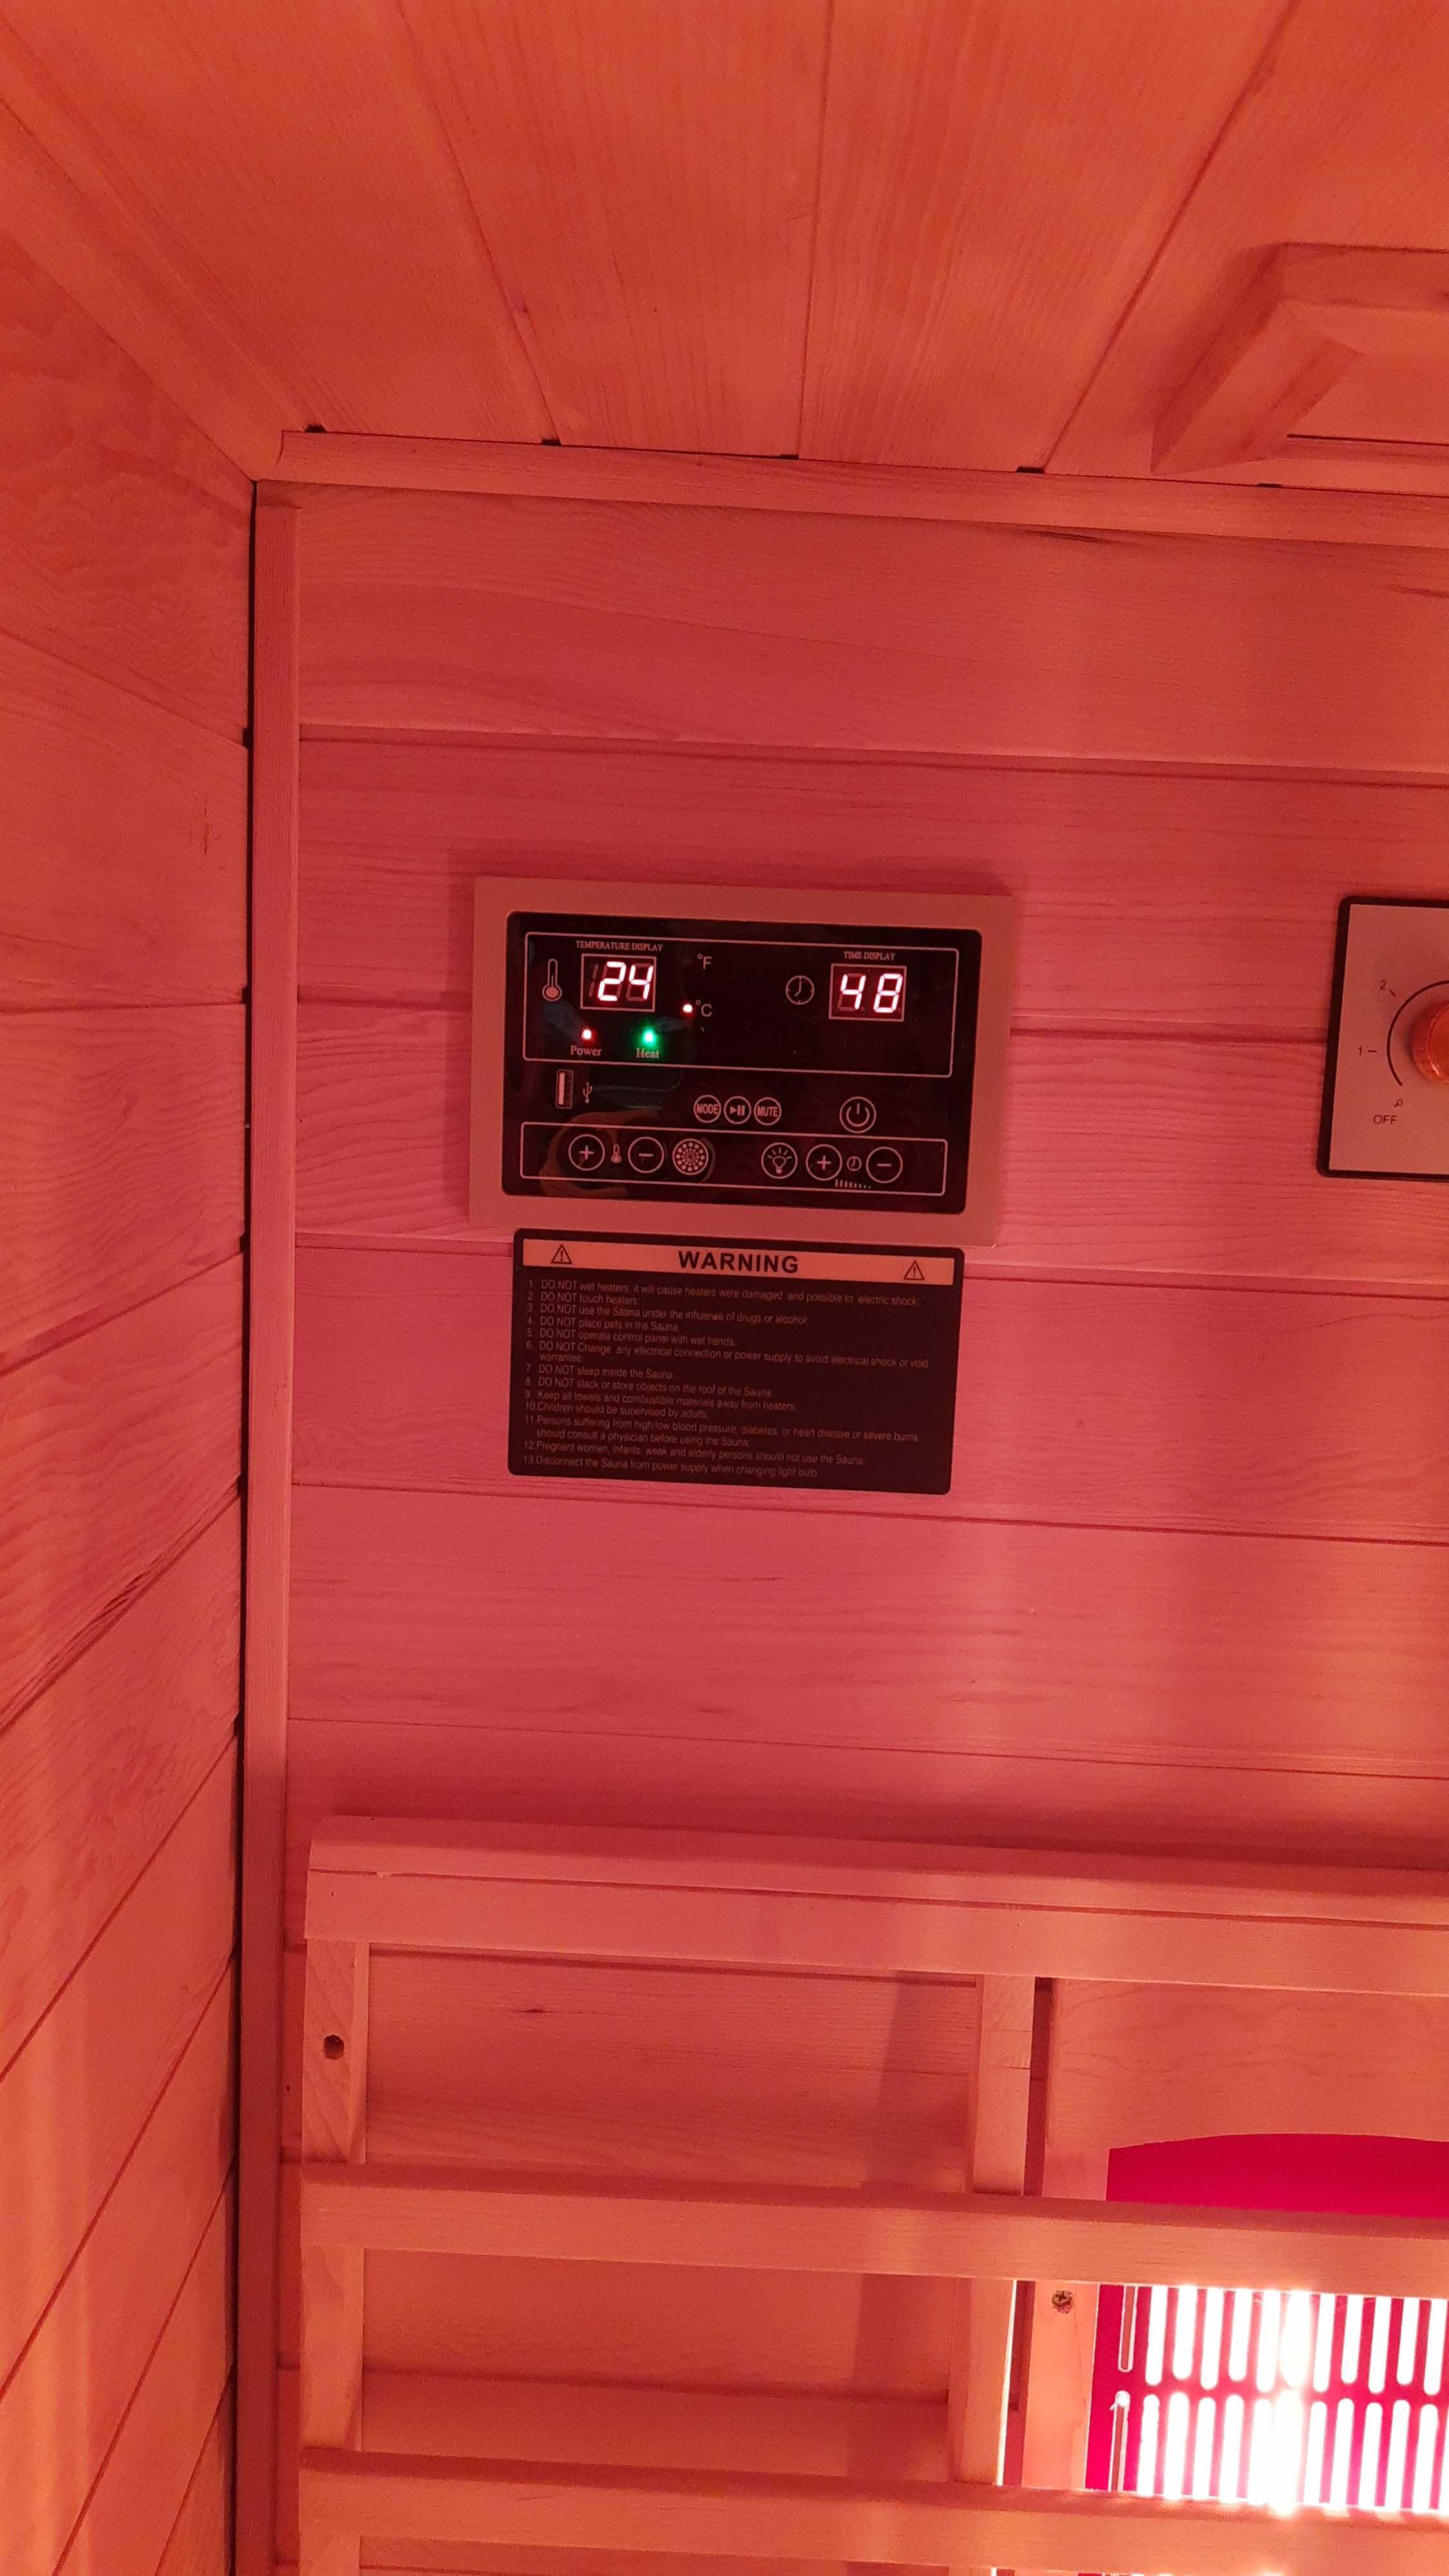 Sauna infrared Sydney prom. kwarcowe lub ceramiczne 1 osoba